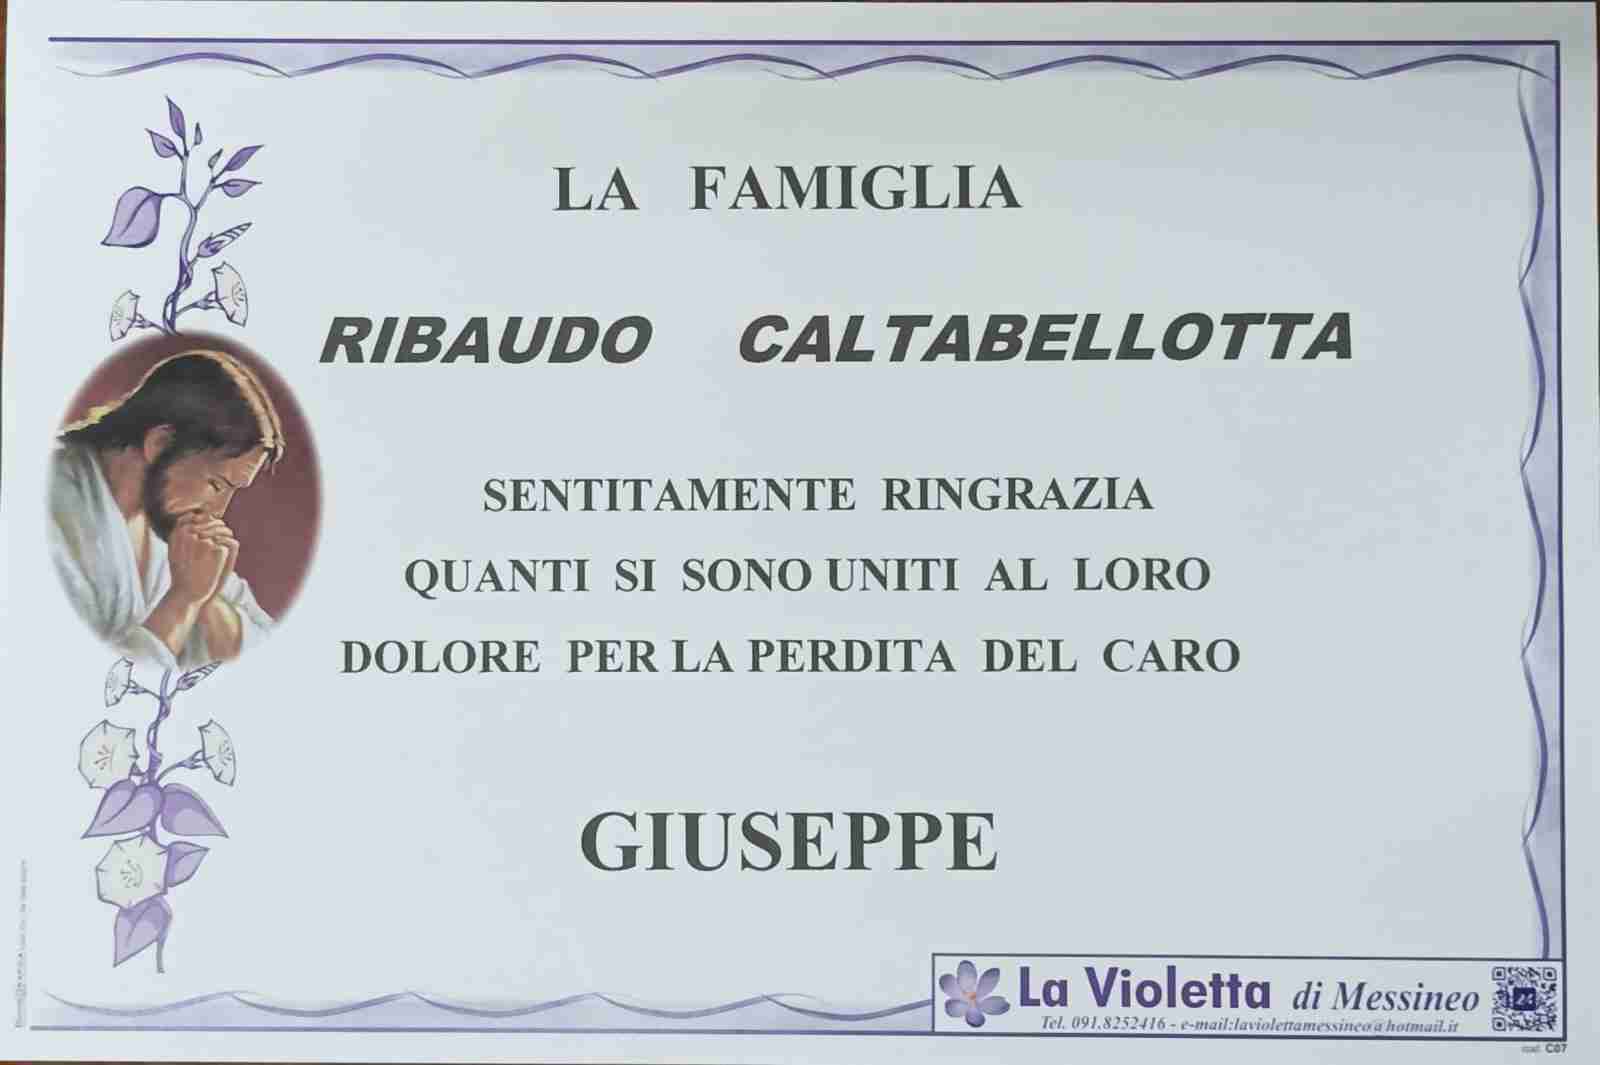 Giuseppe Ribaudo